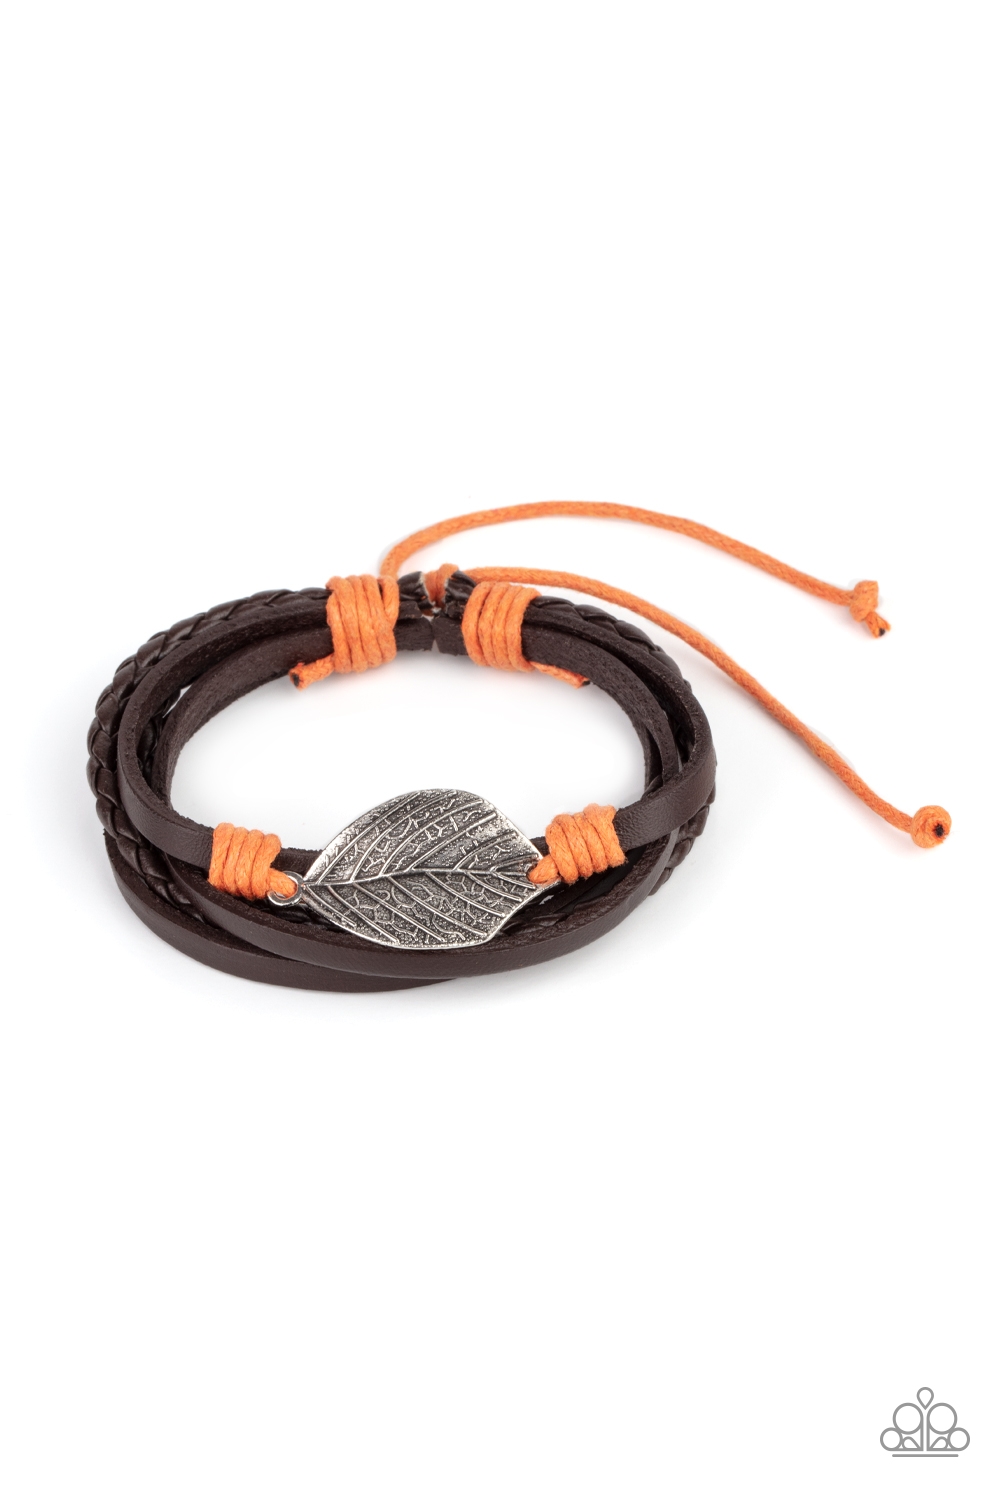 Bracelet - FROND and Center - Orange